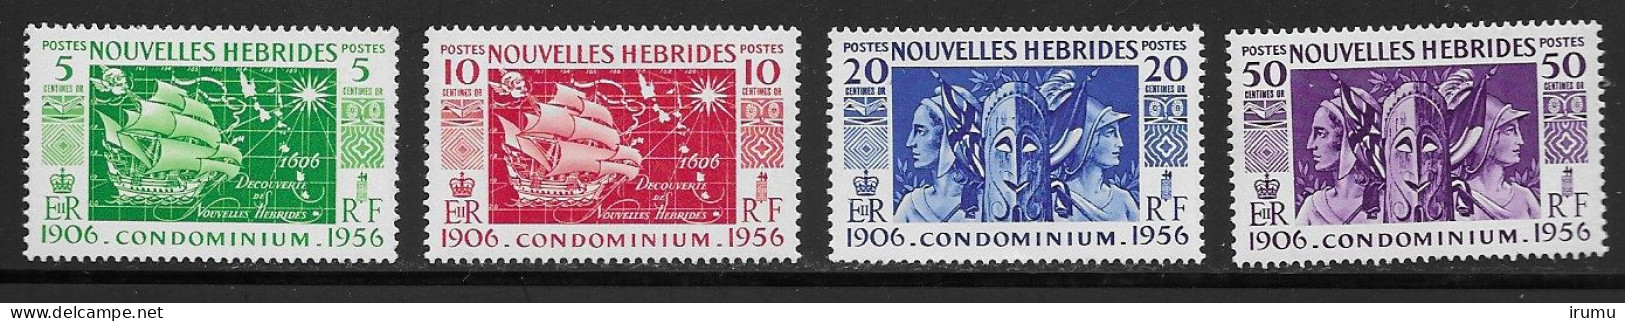 Nlle Hébrides 1956 Série Complète * (Y&T 167-170) Vc 8.5 EUR (SN 2103) - Nuovi